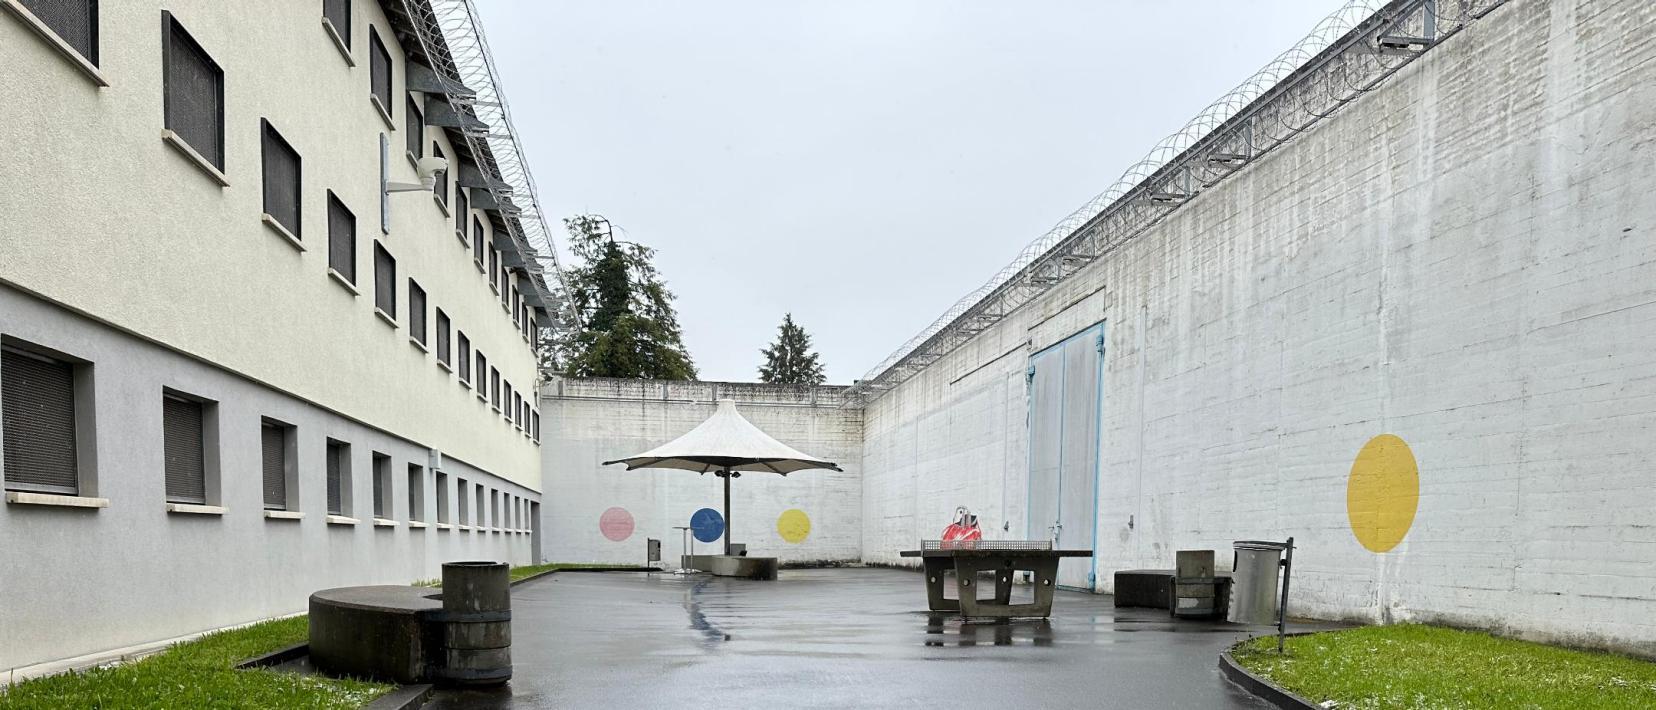 Der Spazierhof des ehemaligen Gefängnisses ist von Betonmauern umgeben und hat einen Pingpongtisch und Sonnenschirm sowie Rasenfläche in der Mitte.